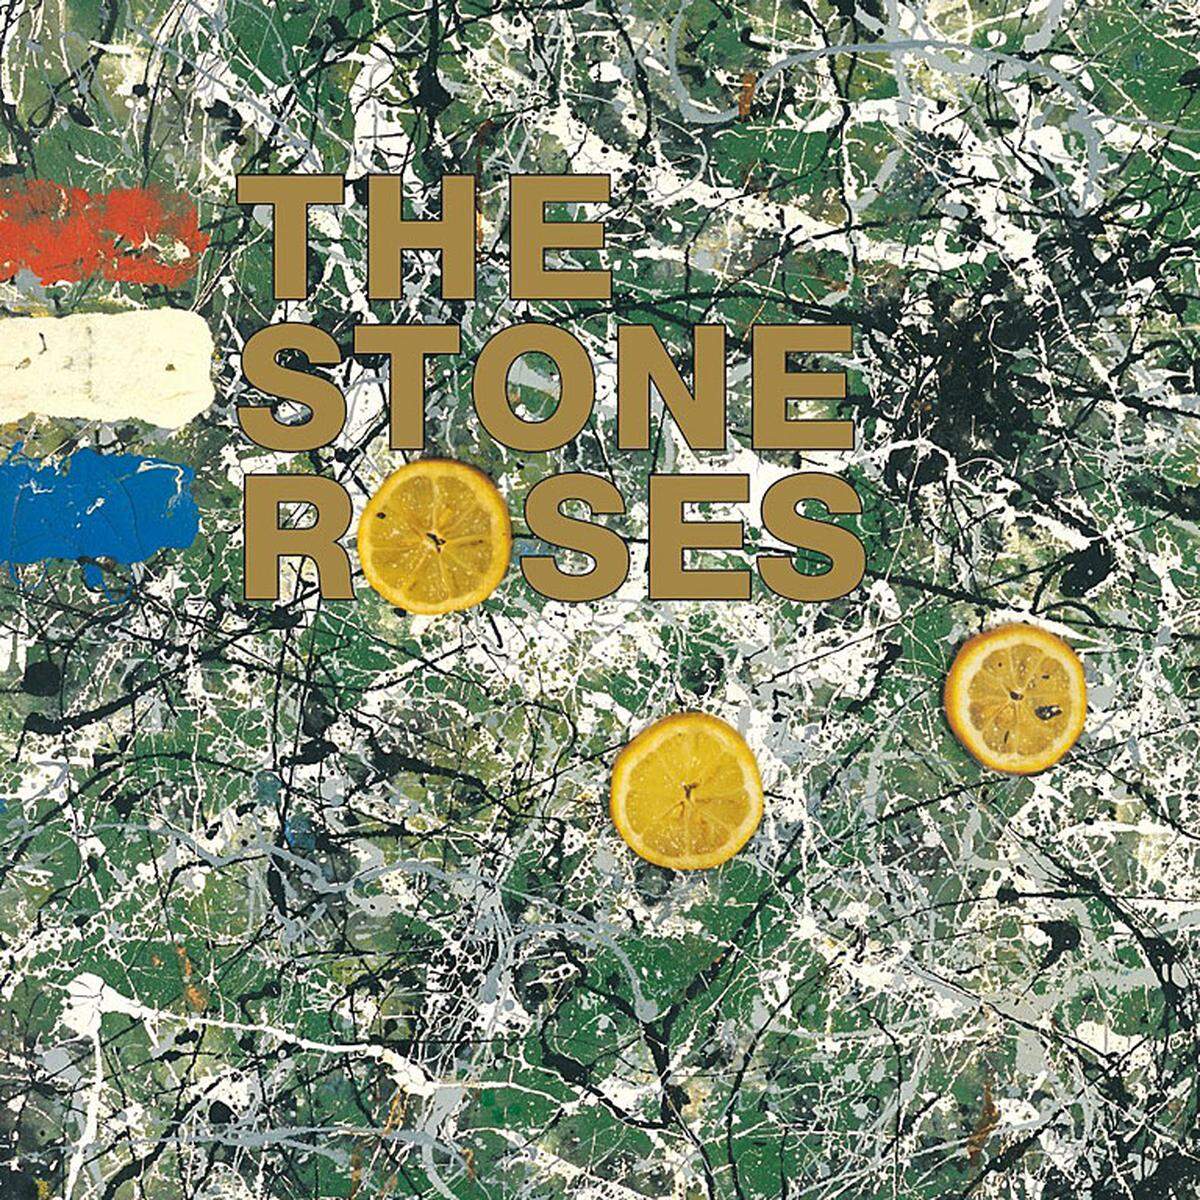 Die Stone Roses aus Manchester haben genau zwei Alben gemacht. Das zweite, "Second Coming", kann man sich schenken. Das erste, "The Stone Roses" (1989) sollte man sich kaufen.